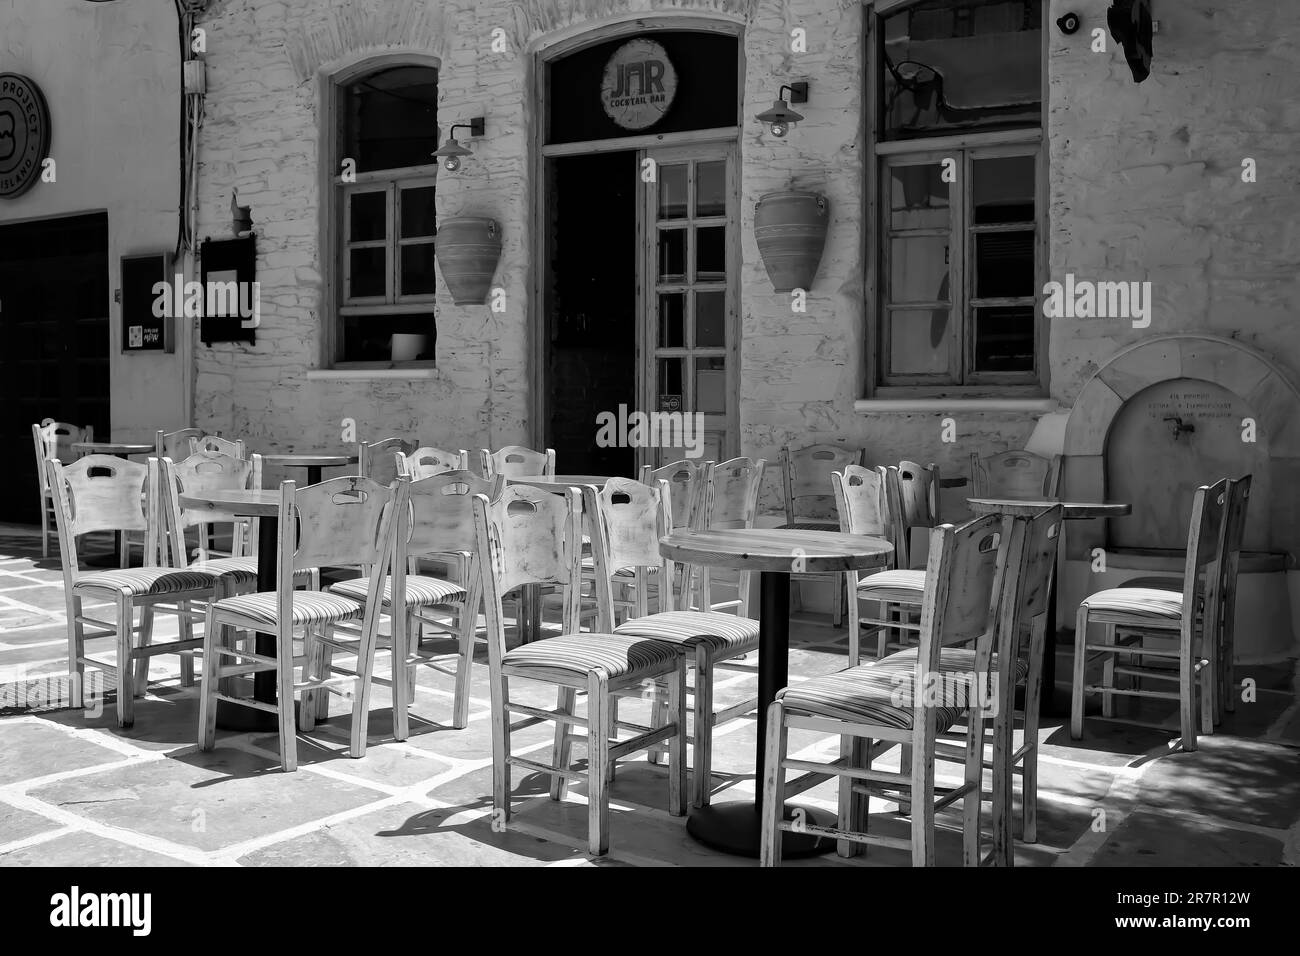 IOS, Grecia - 25 maggio 2021 : Vista della famosa piazza circondata da bar nella pittoresca isola di iOS Grecia Foto Stock